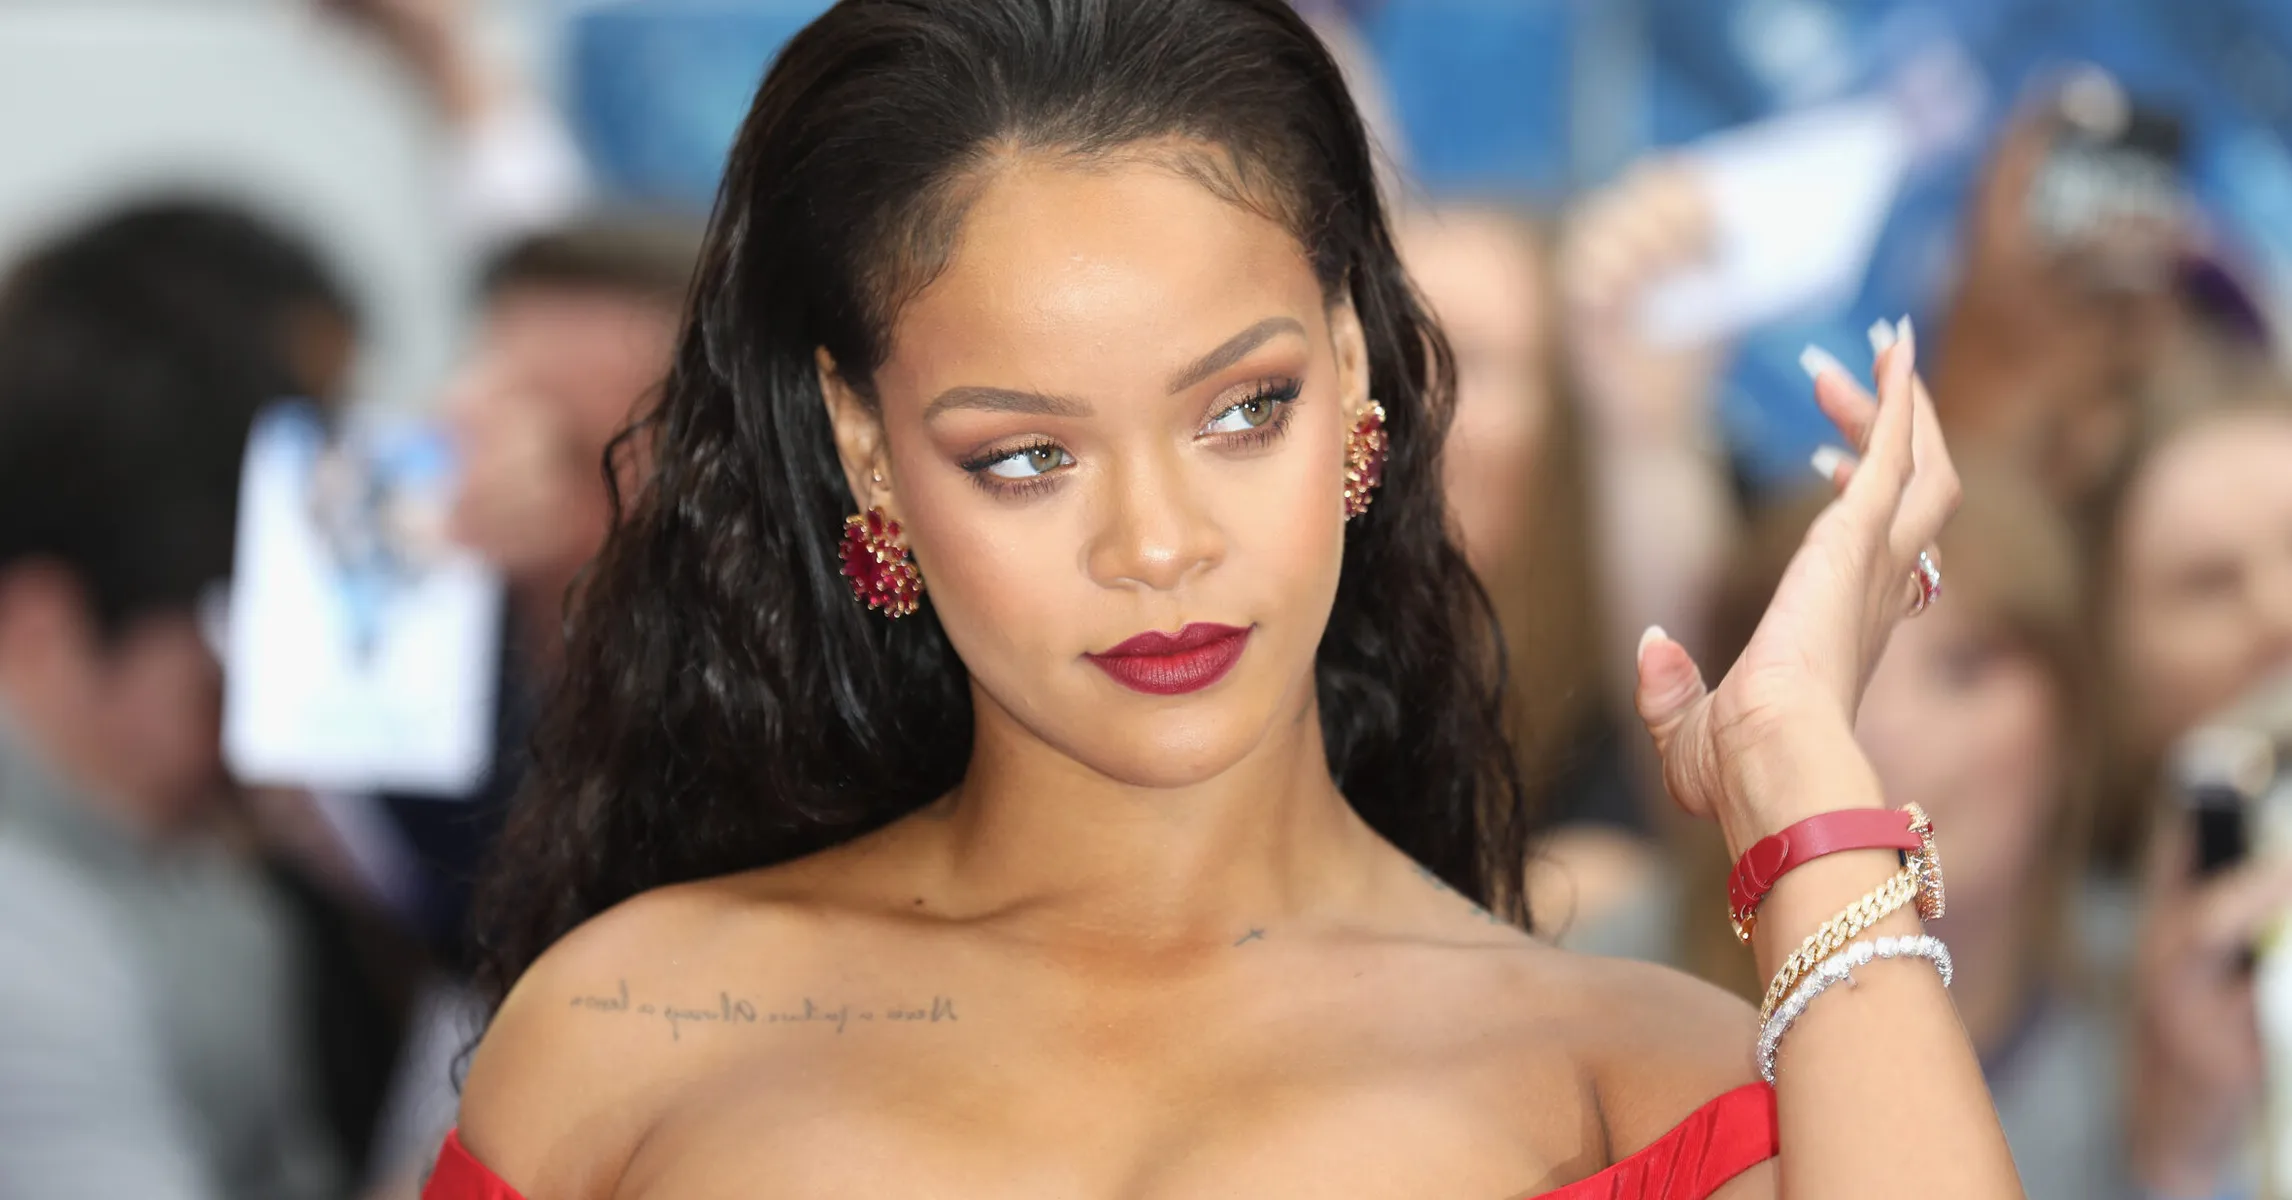 蕾哈娜 (Rihanna) 演绎水钻牛仔造型登上《Vogue》中国版封面